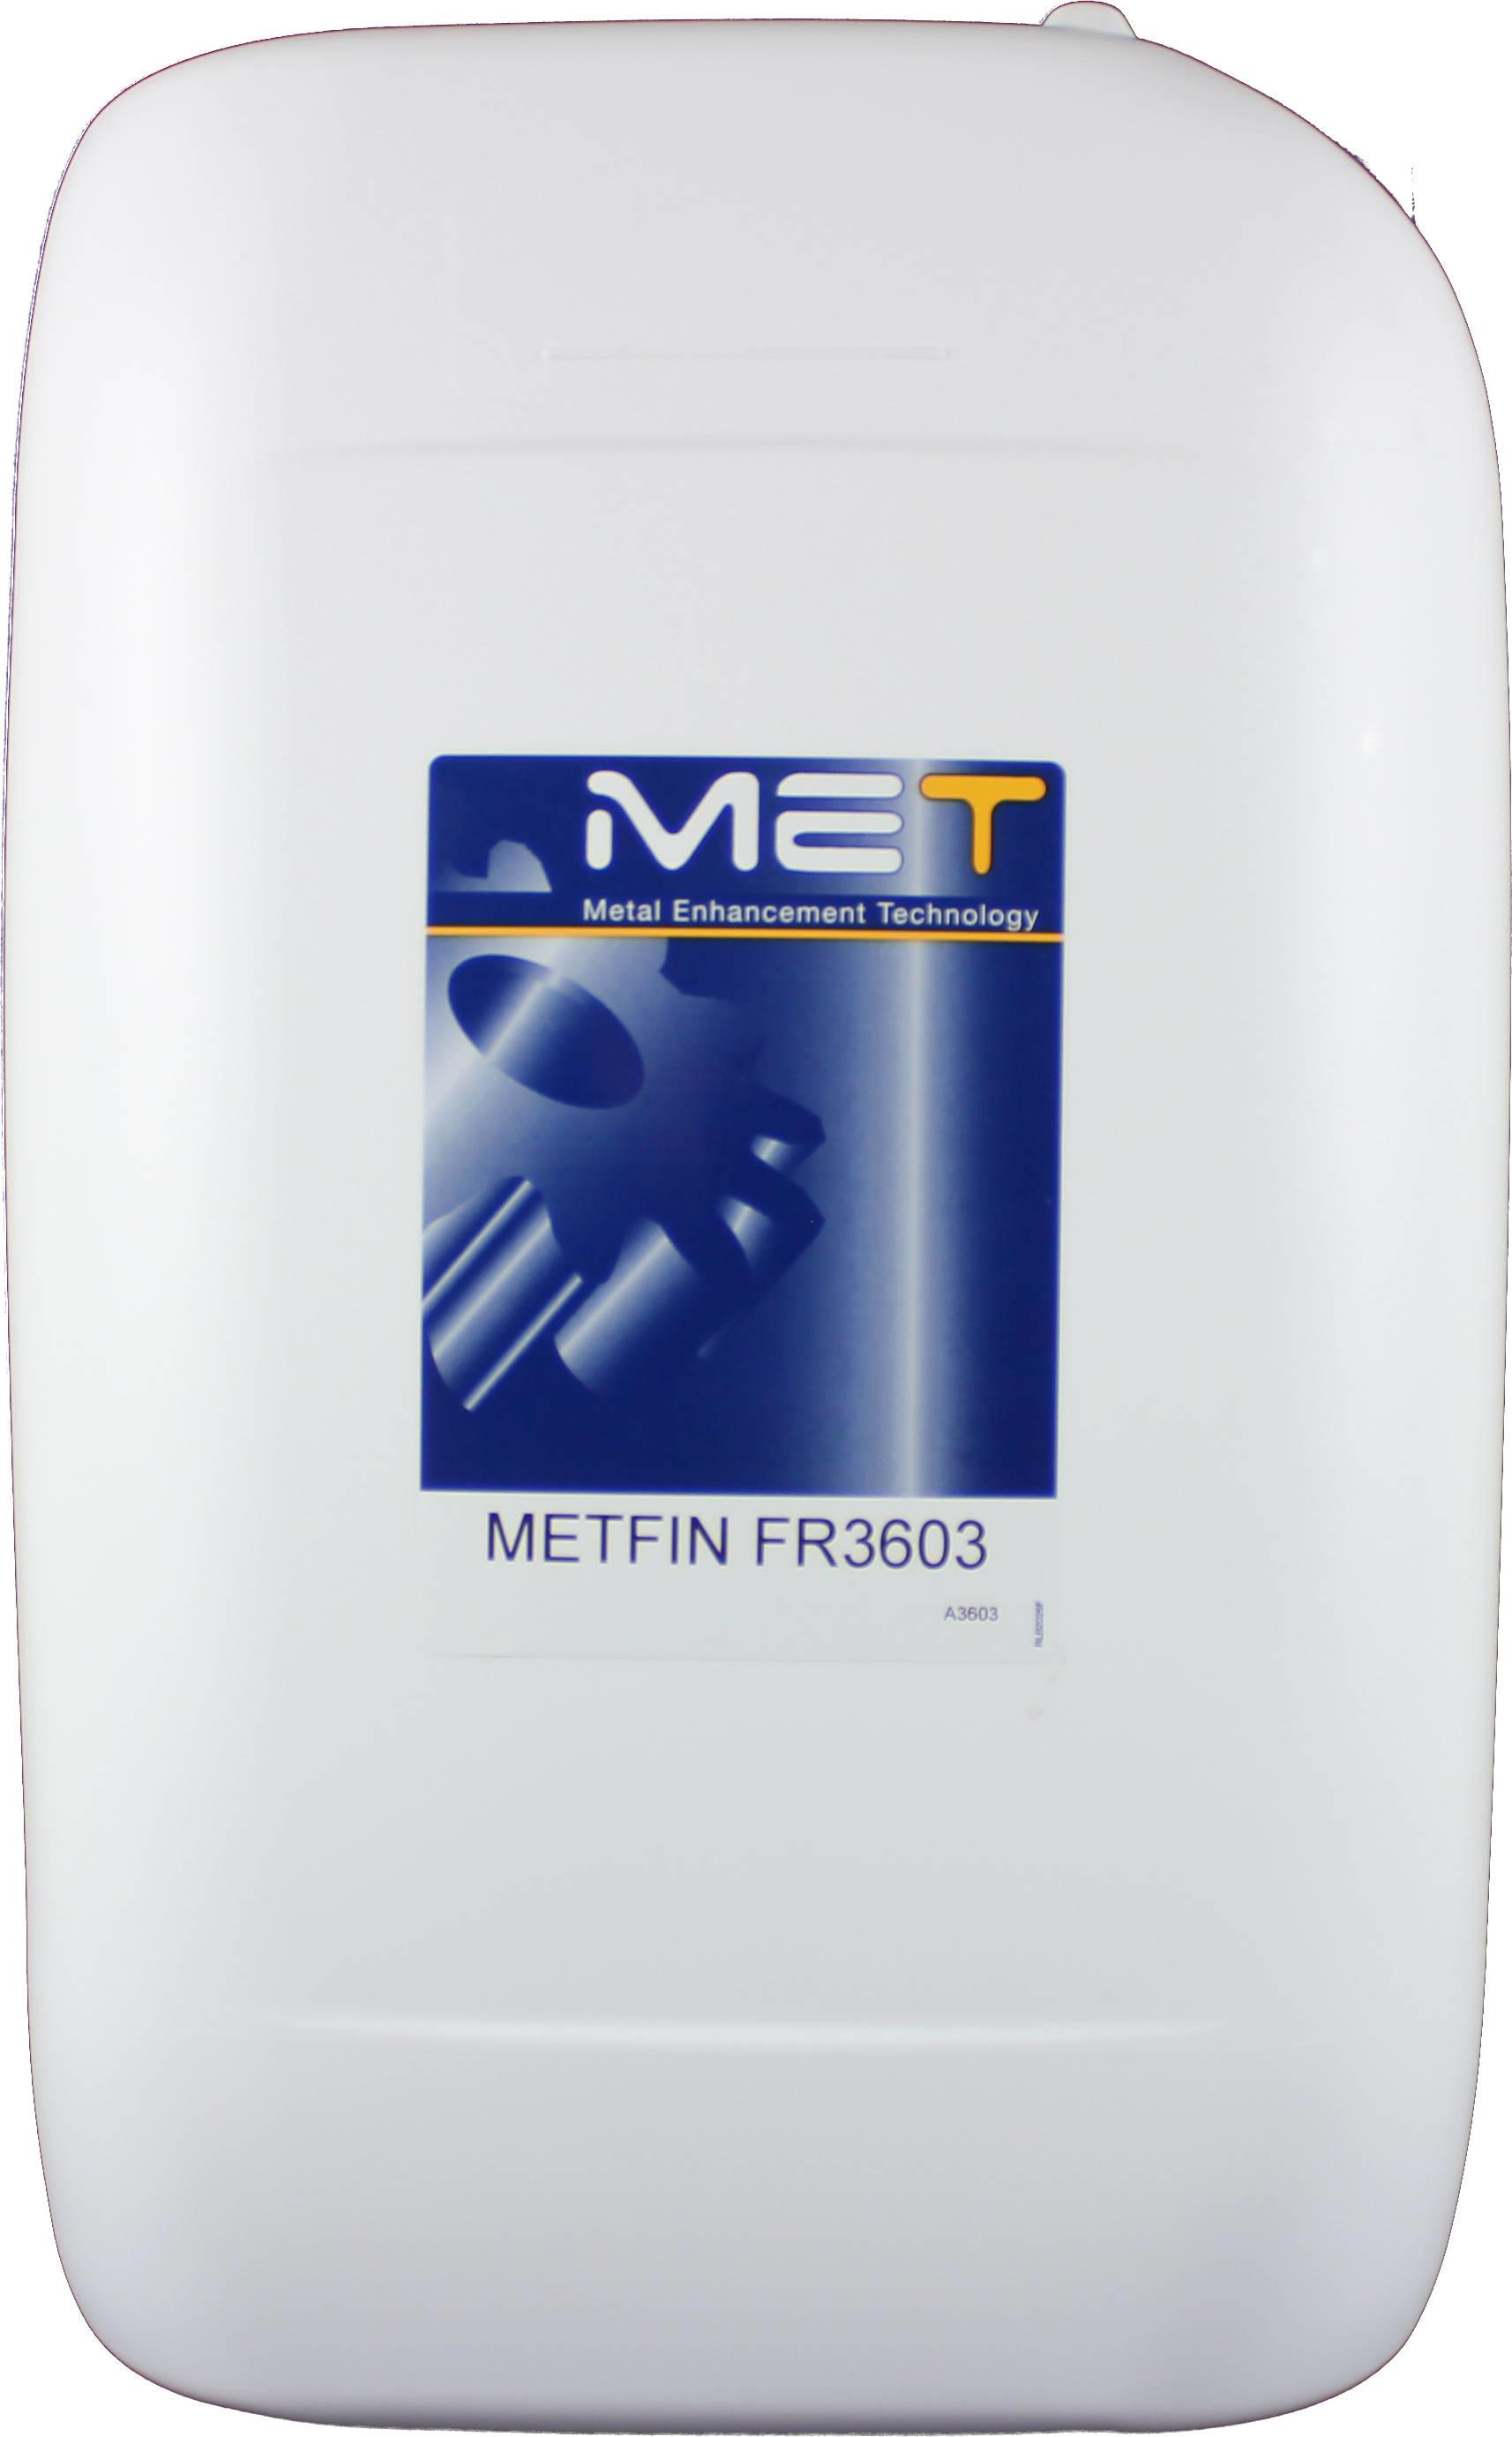 Metfin FR3603